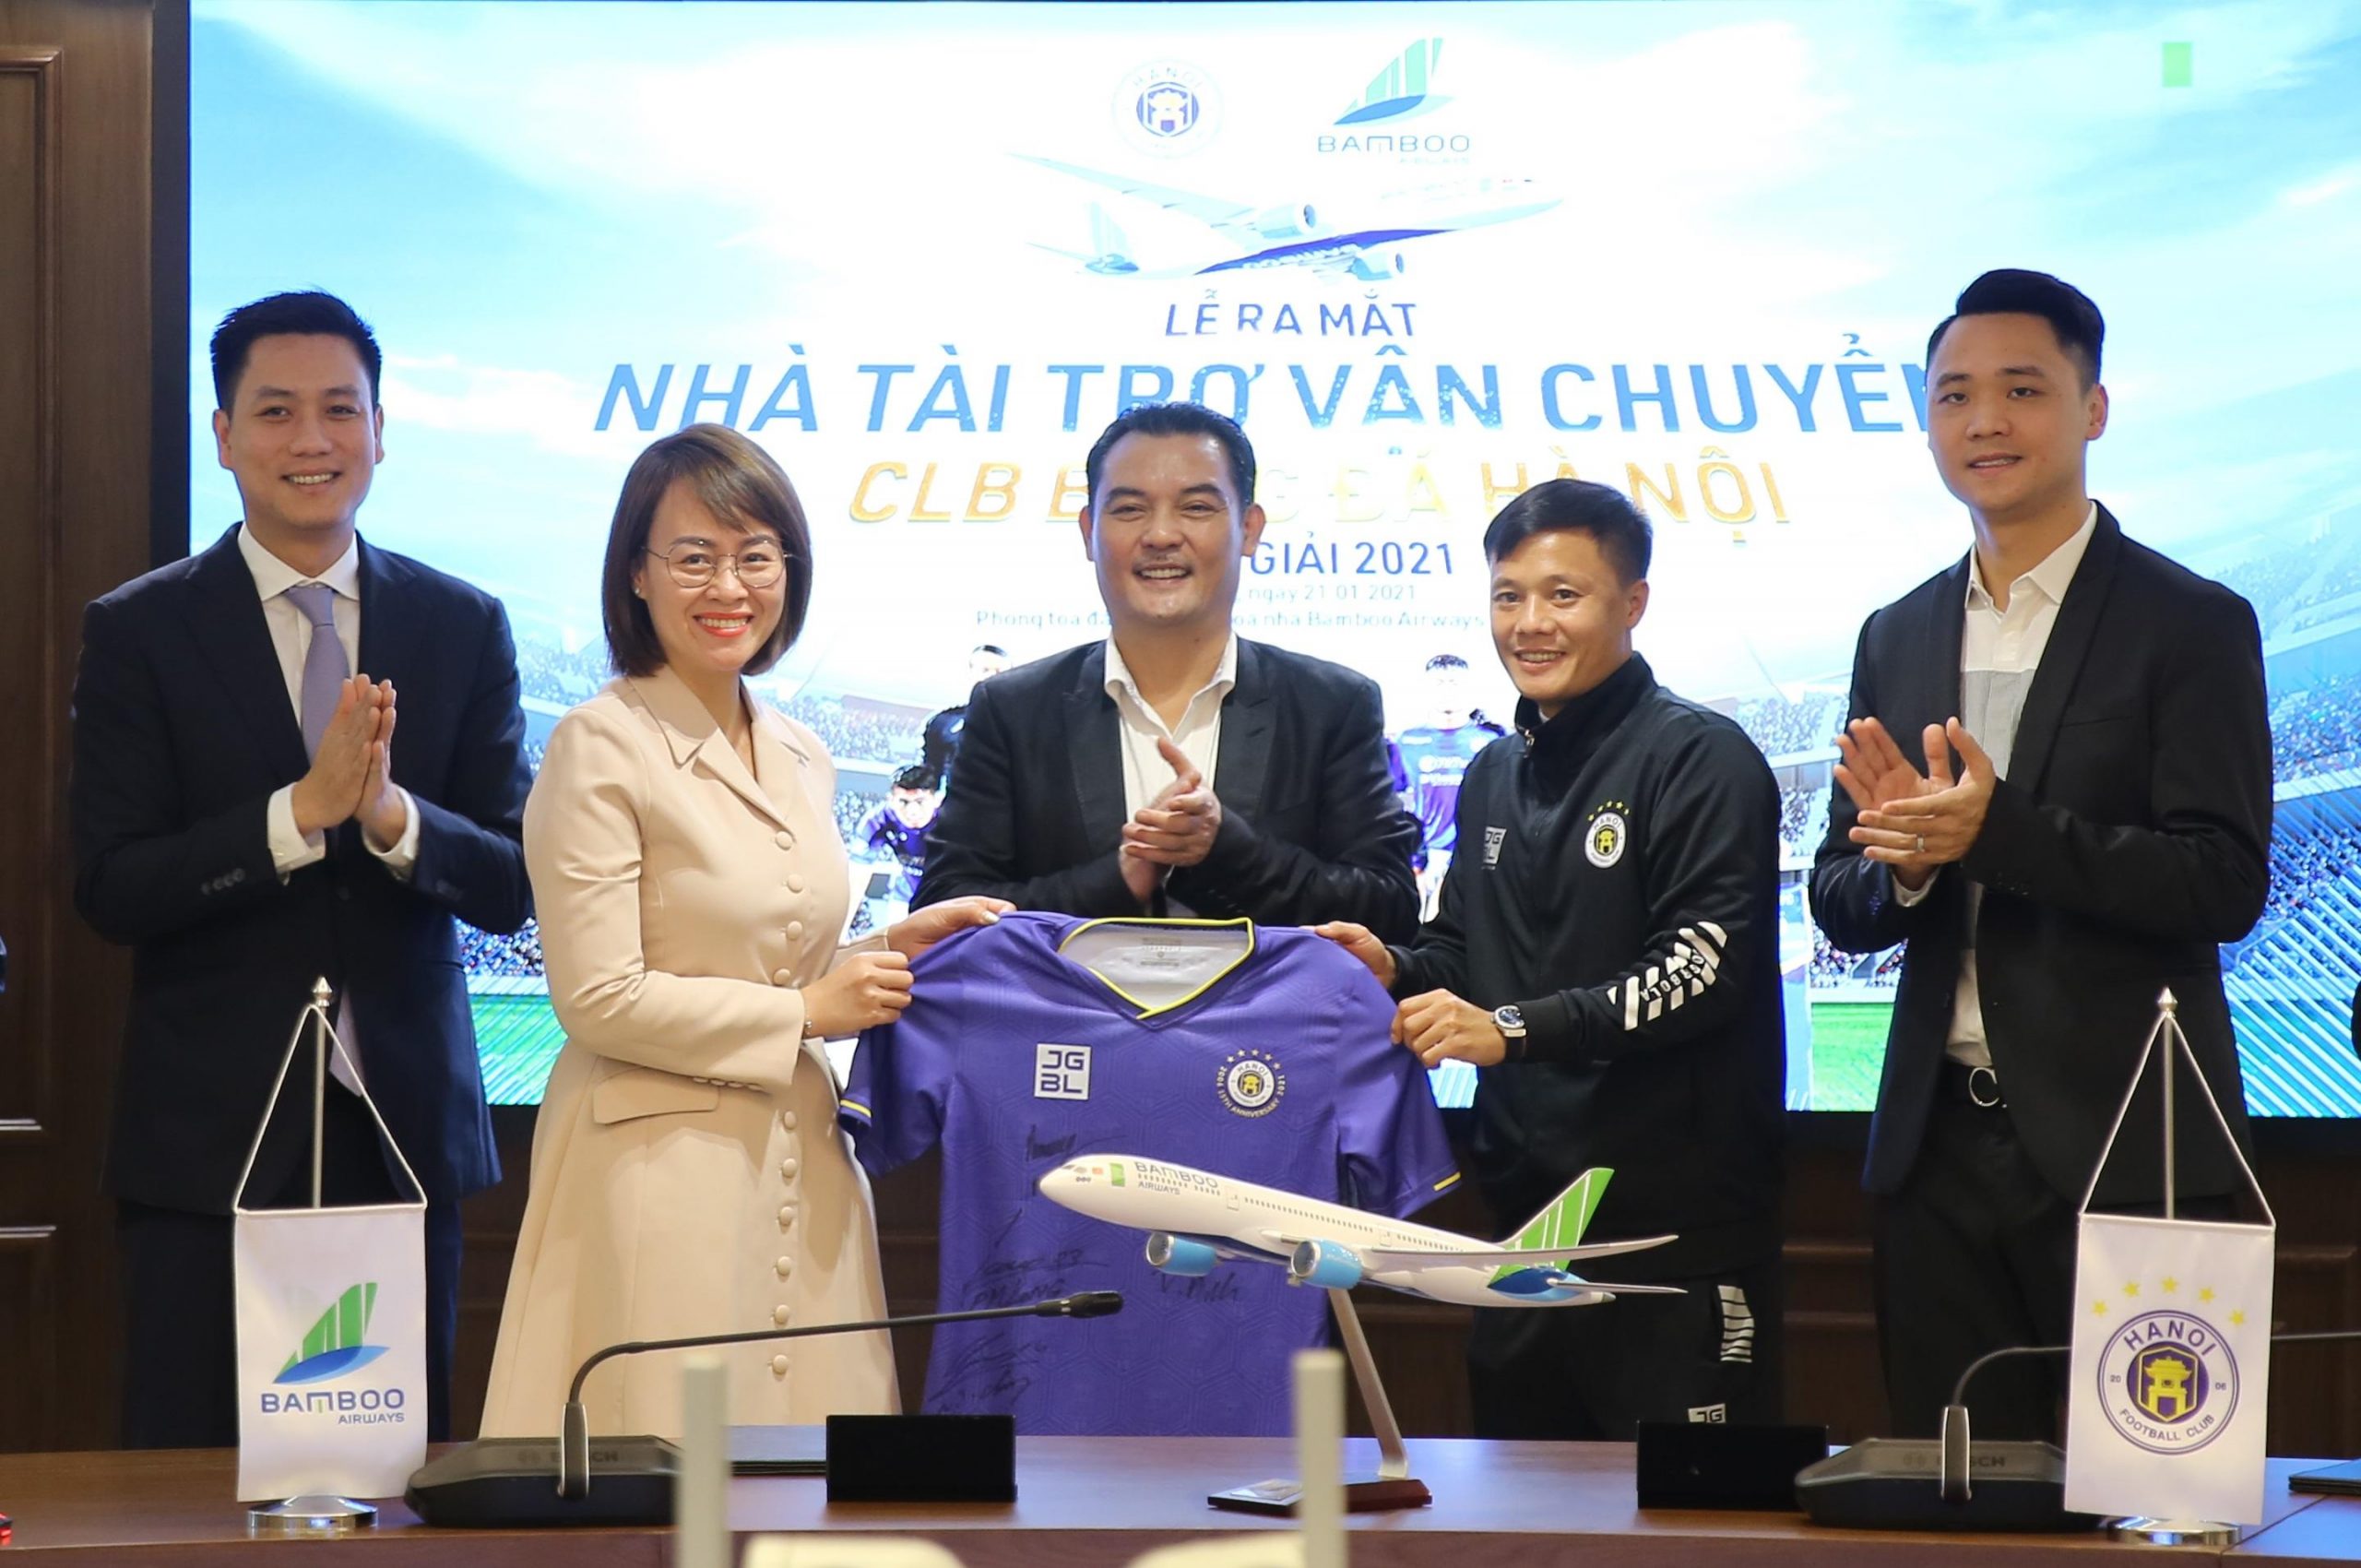 Lee Nguyễn sẽ khoác màu áo mới trong đội tuyển CLB TP. HCM